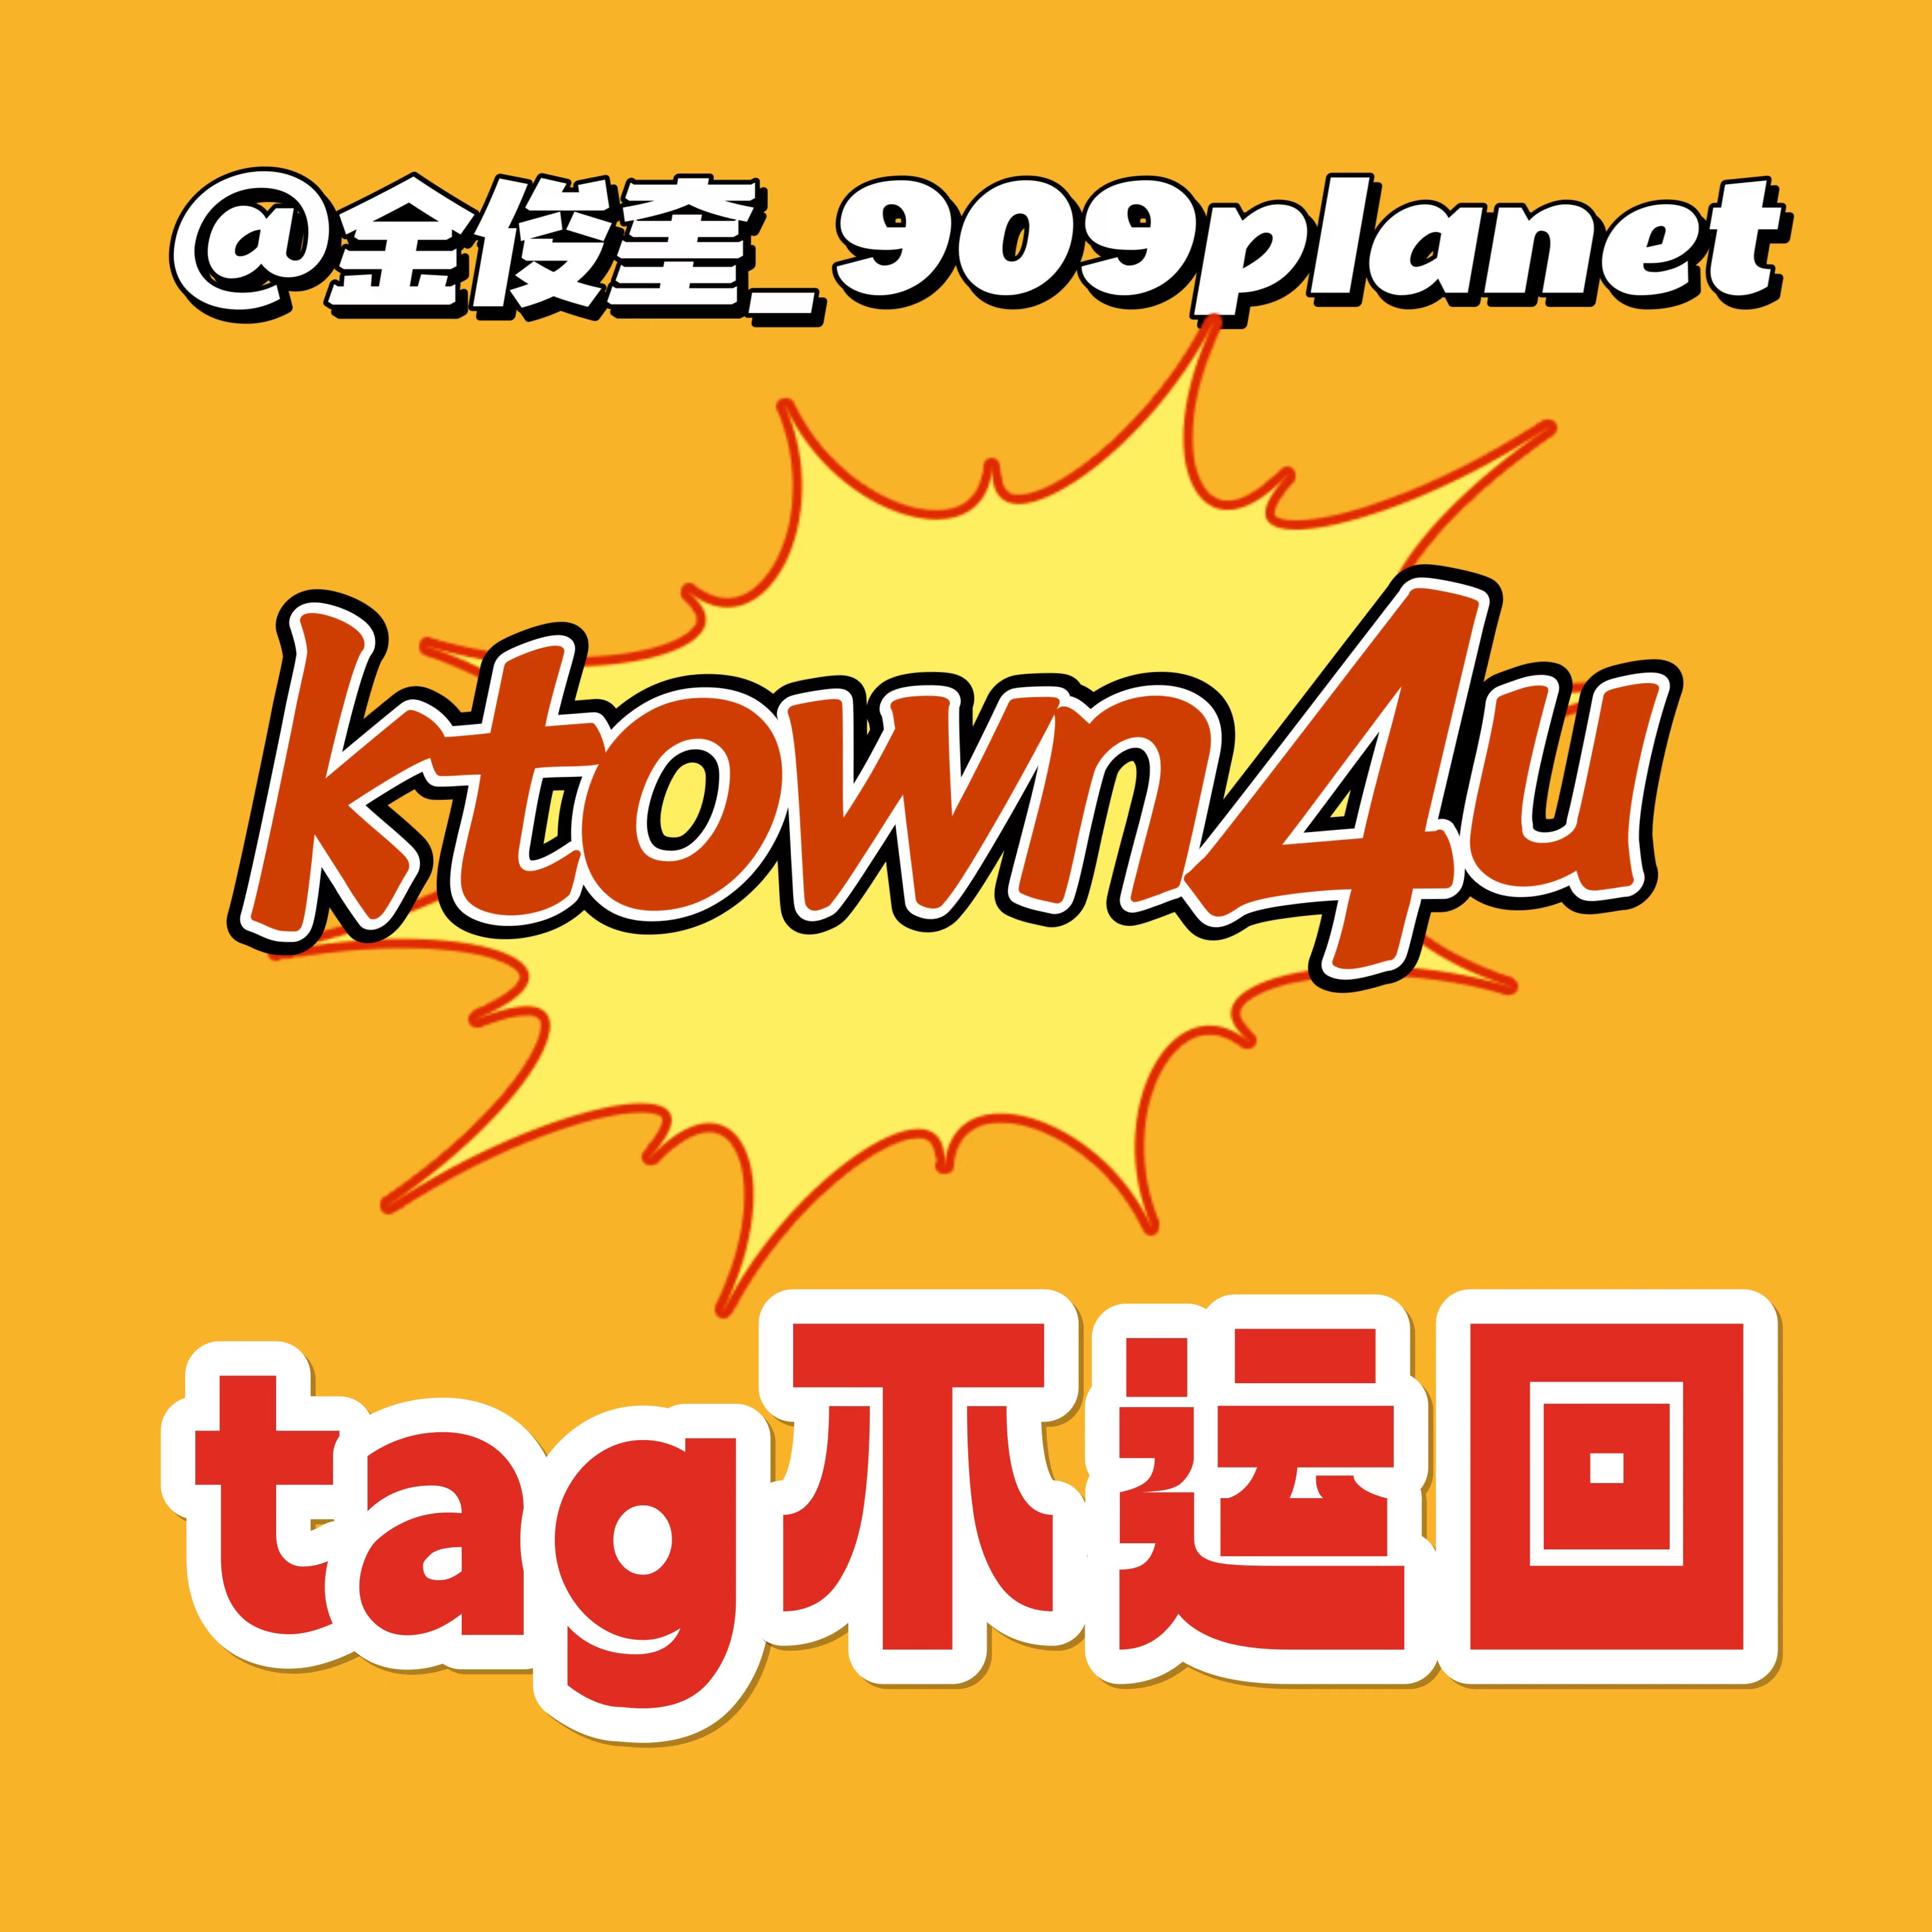 [拆卡专] [Ktown4u Special Gift] TREASURE - 2ND FULL ALBUM [REBOOT] YG TAG ALBUM (随机版本)_金俊奎909Planet